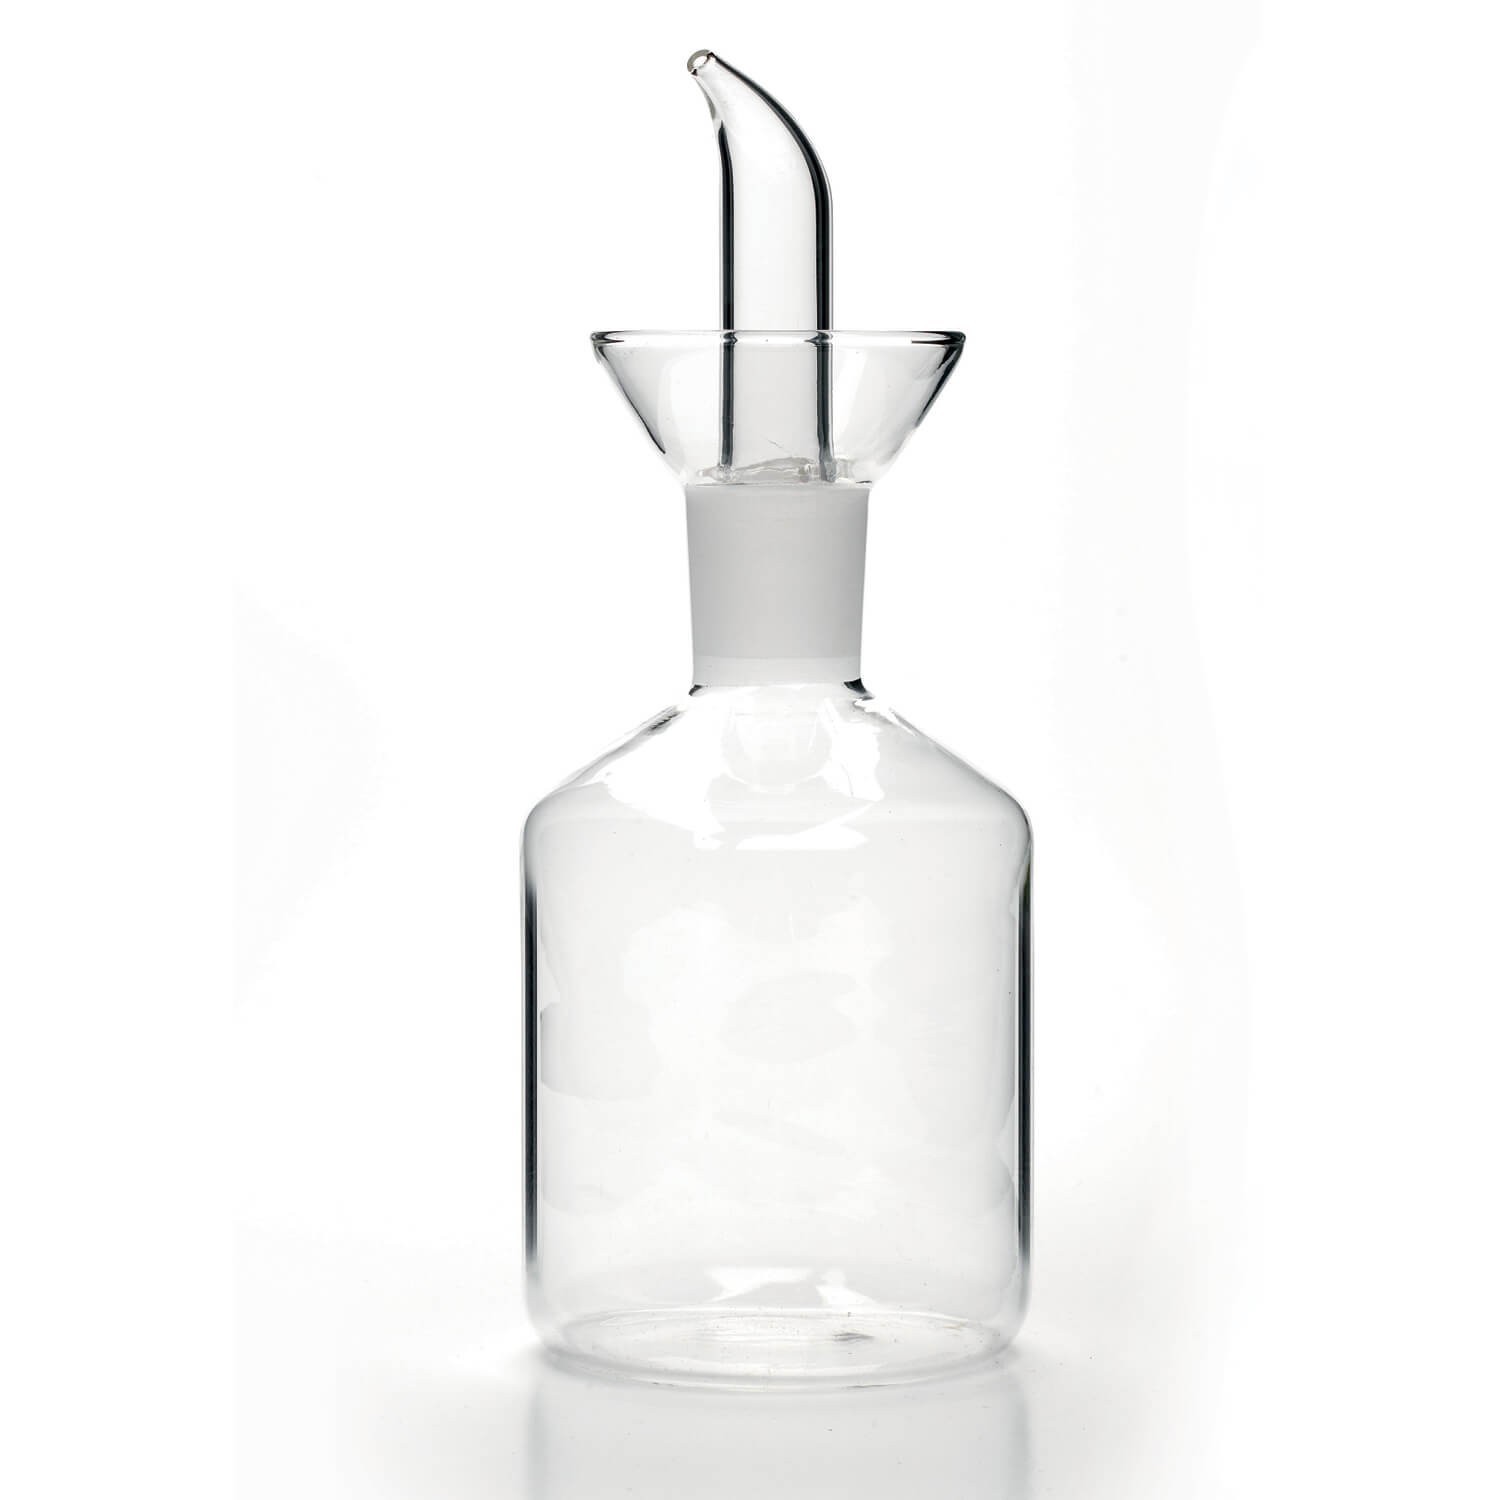 Oliera Cilindrica, vetro borosilicato salvagoccia 250 ml - Classe